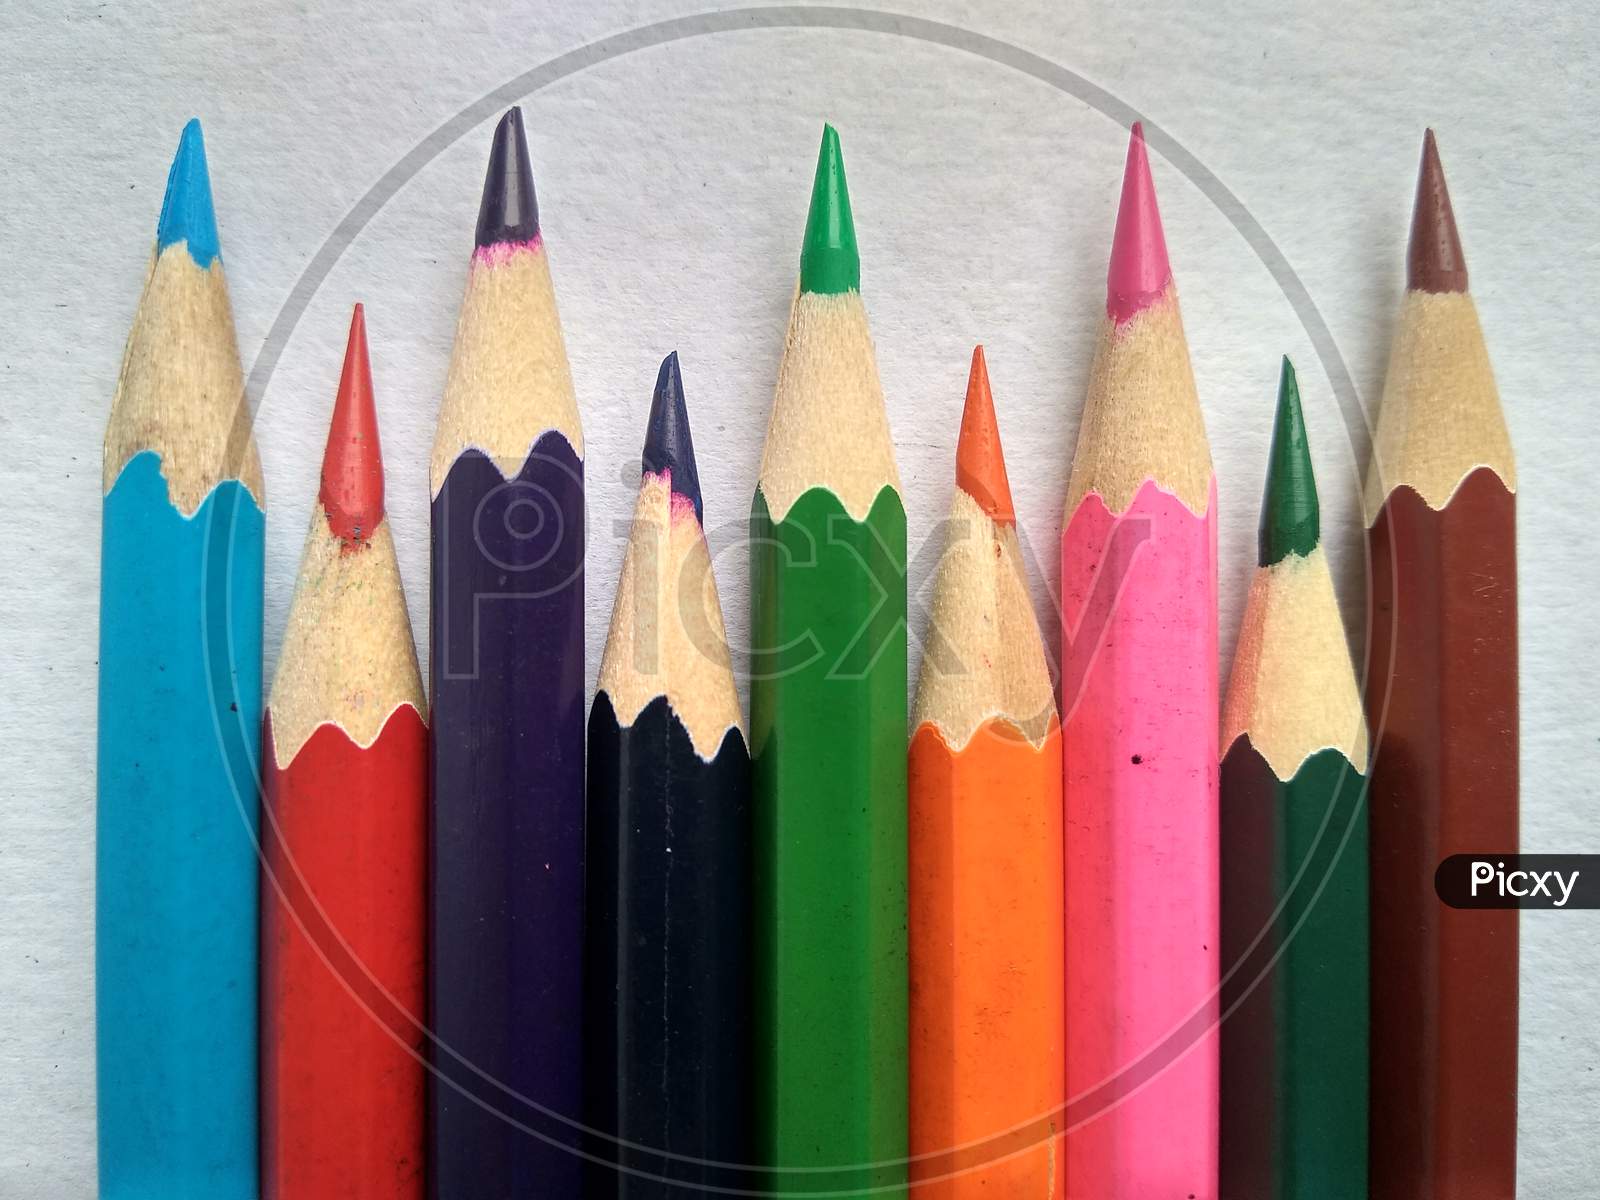 Zigzag arrangement of colour pencils